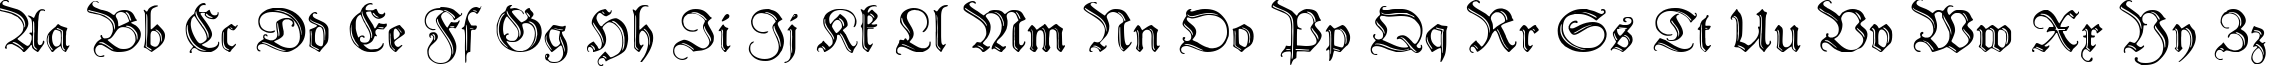 Пример написания английского алфавита шрифтом Peter Schlemihl